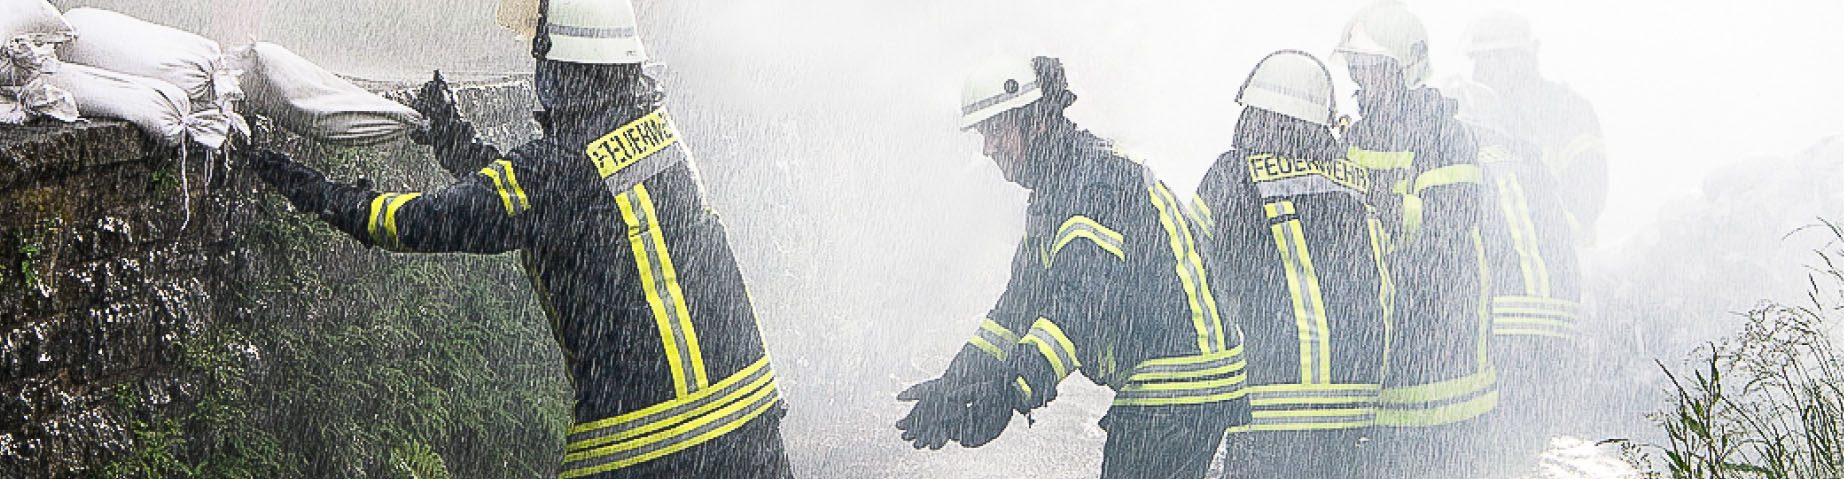 Die Freiwillige Feuerwehr kämpft mit Sandsäcken gegen ein Hochwasser.